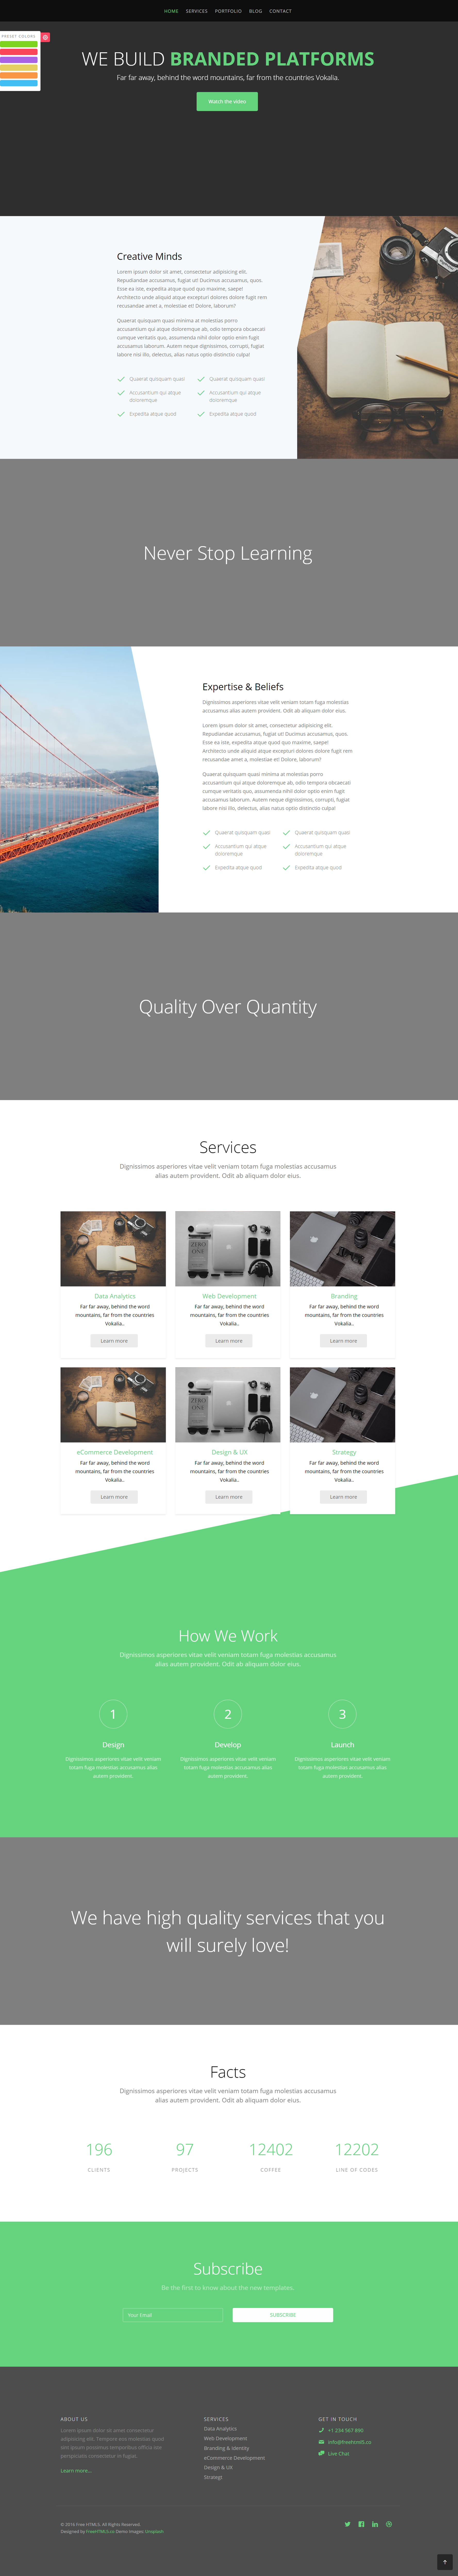 绿色简洁风格响应式企业品牌动态企业网站模板下载